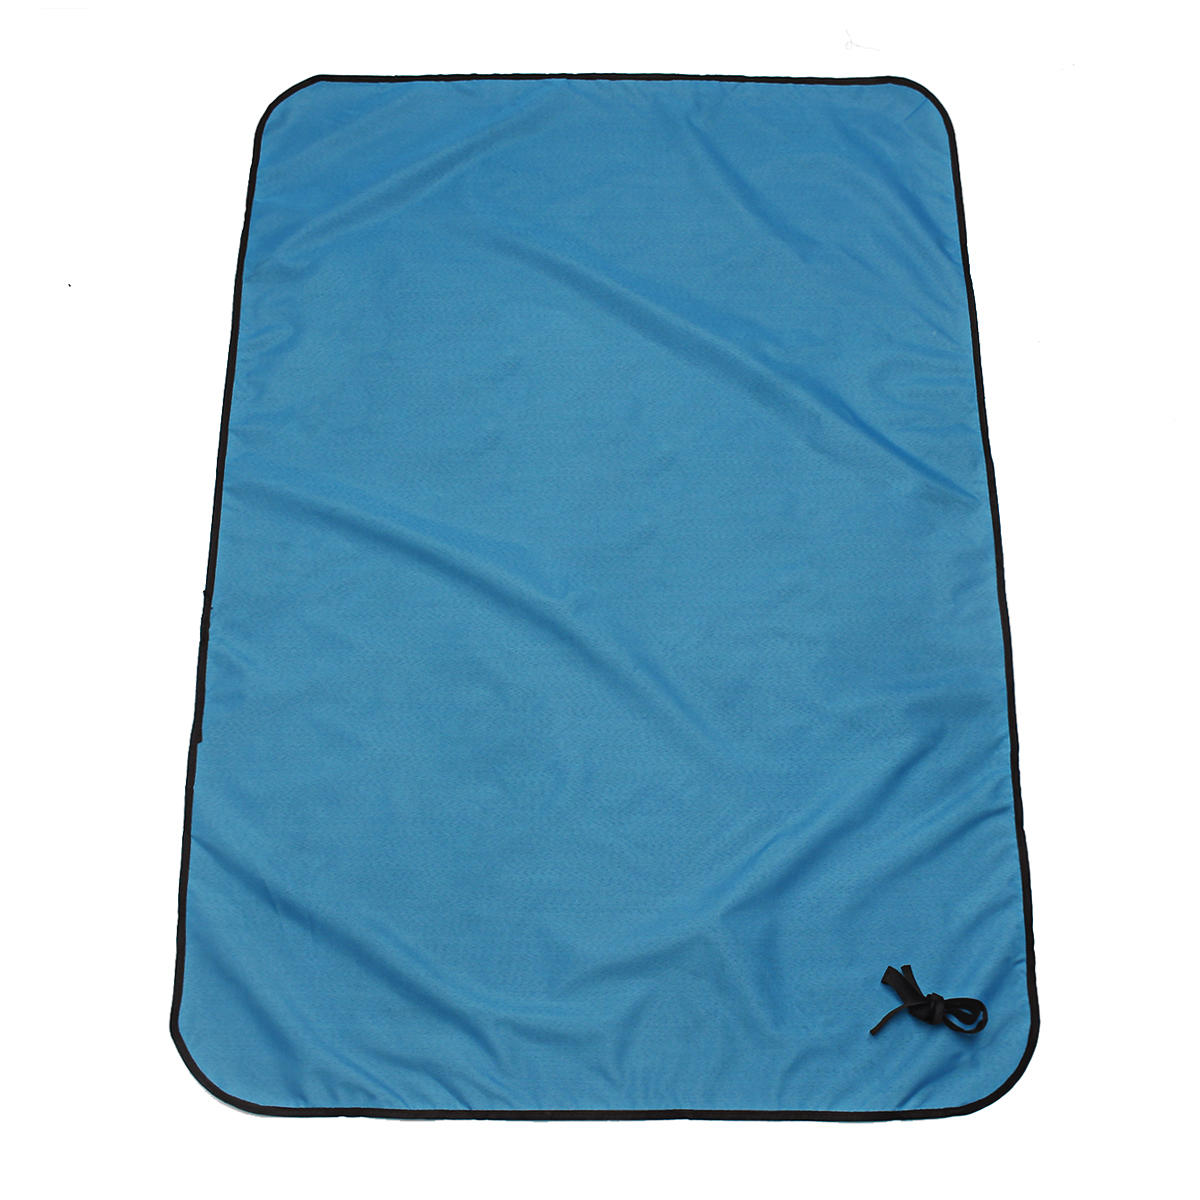 Picknickmat van 200x150cm om op te slapen tijdens kamperen en outdooractiviteiten, waterdicht en geschikt voor het strand.